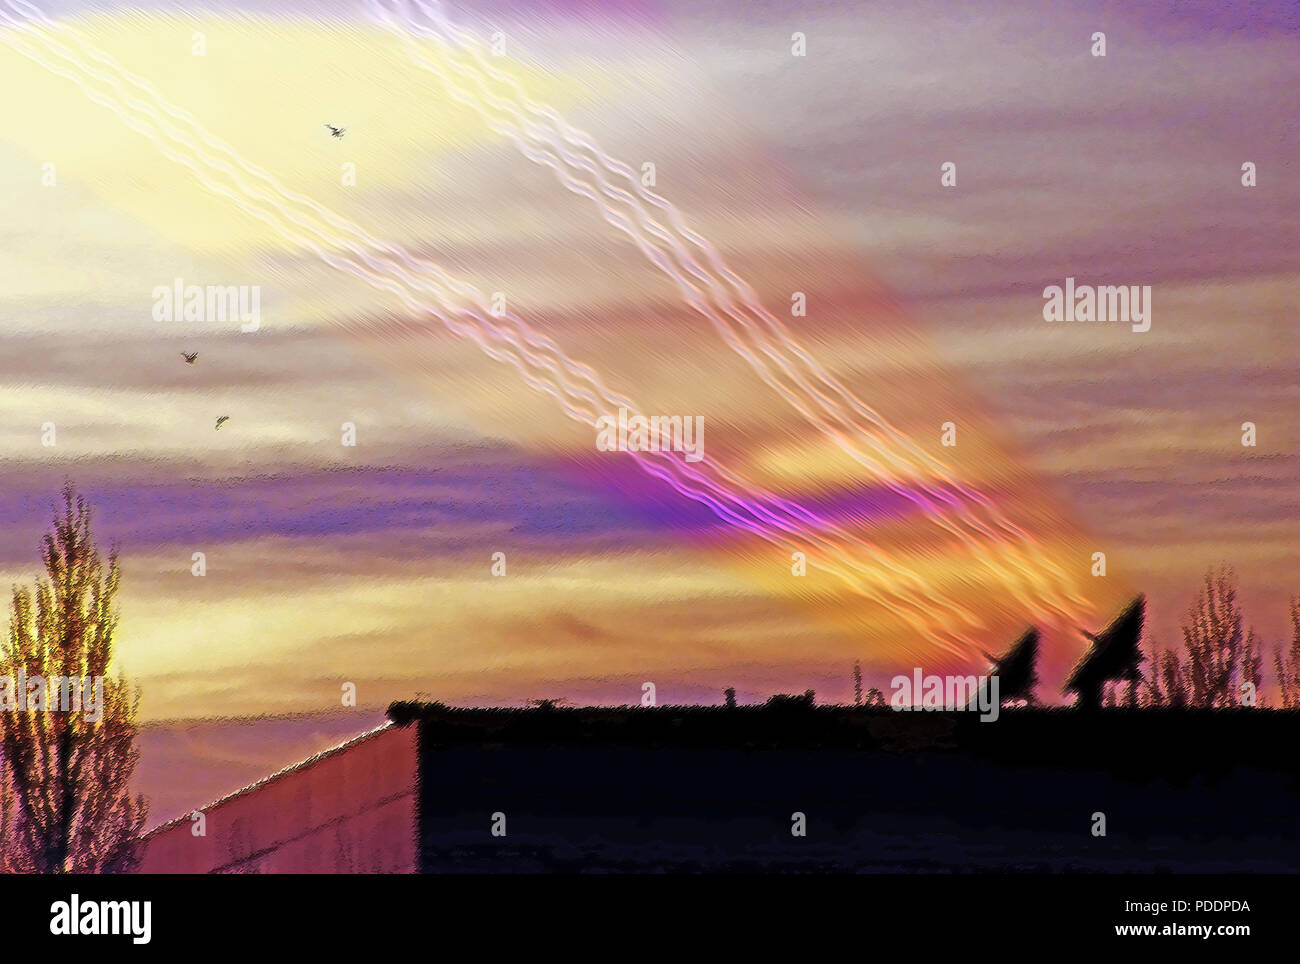 Stagliano parabole satellitari sulla cima di un business all'interno di una regione del nord dello Utah, Stati Uniti d'America business park. Gli uccelli volare attraverso l'aria al tramonto, insieme con il satellite tr Foto Stock